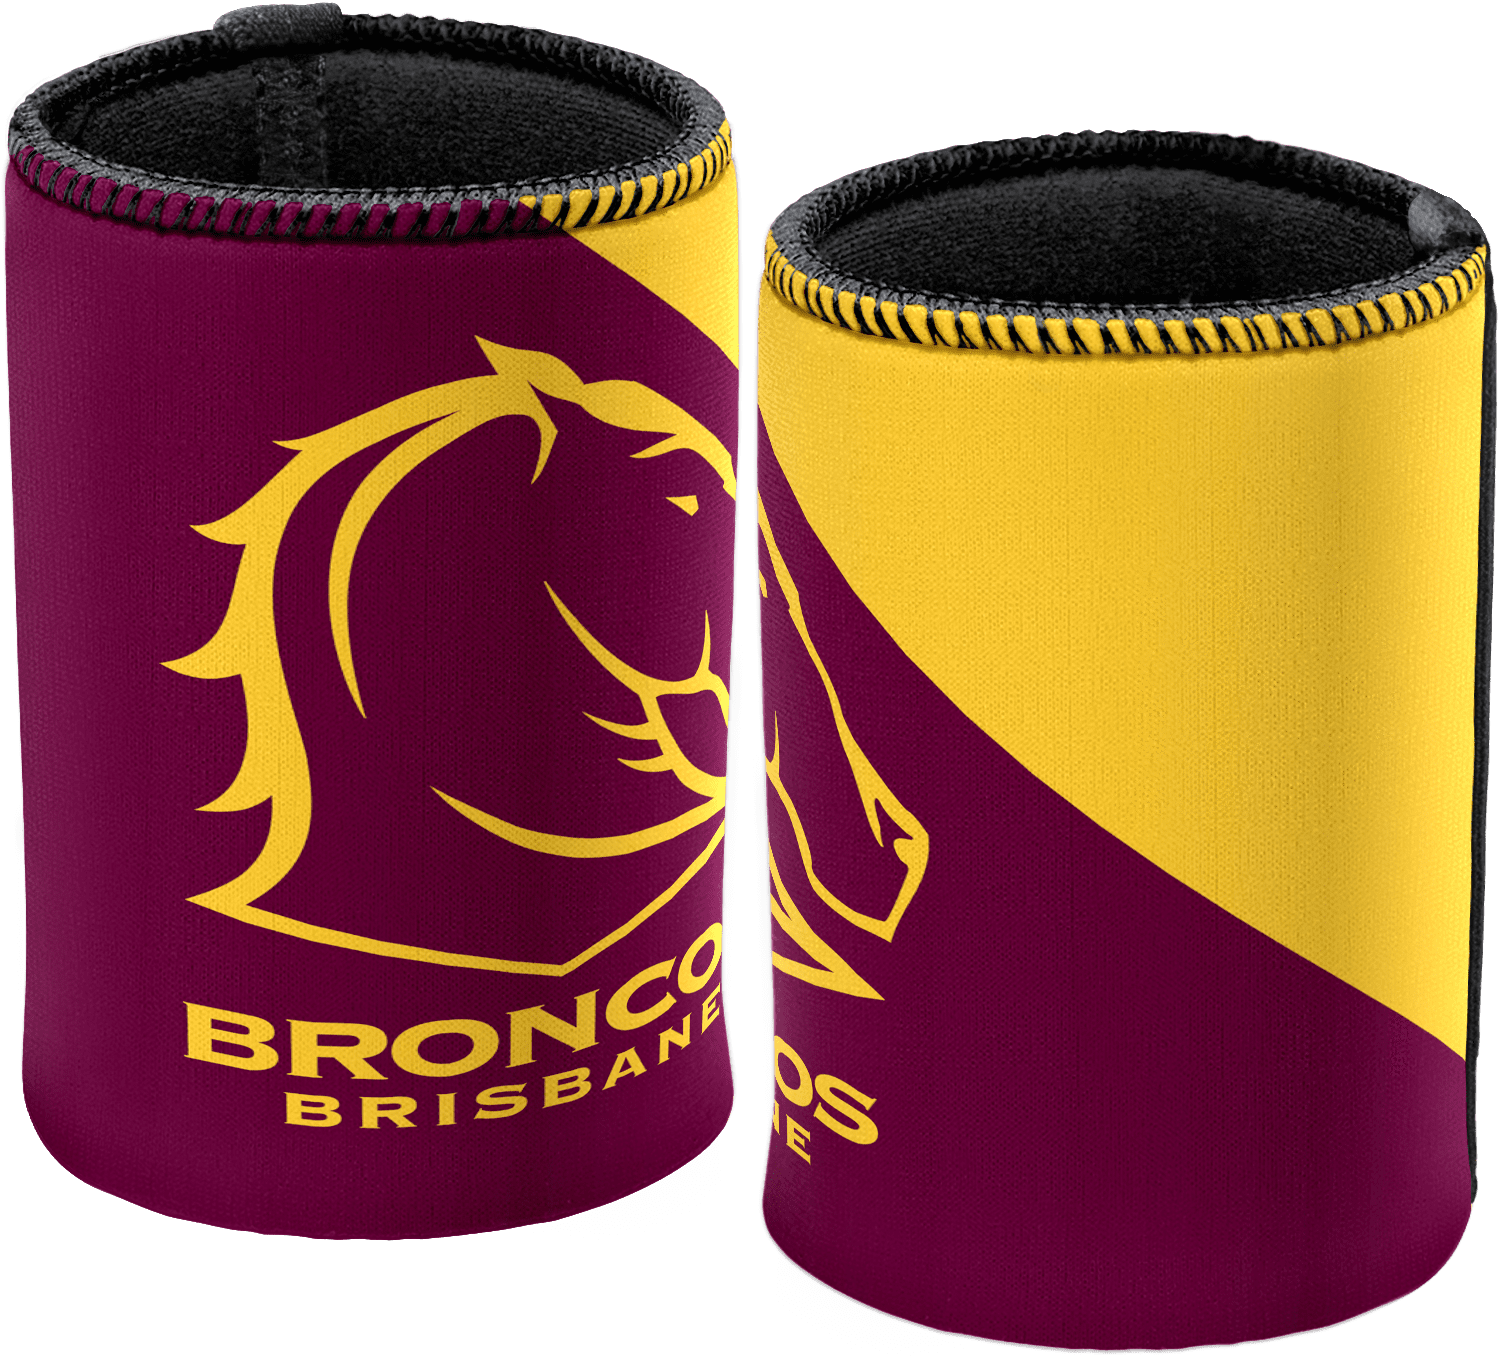 Nrl Can Cooler Jersey Broncos - Brisbane Broncos Logo 2018 (1772x1772), Png Download